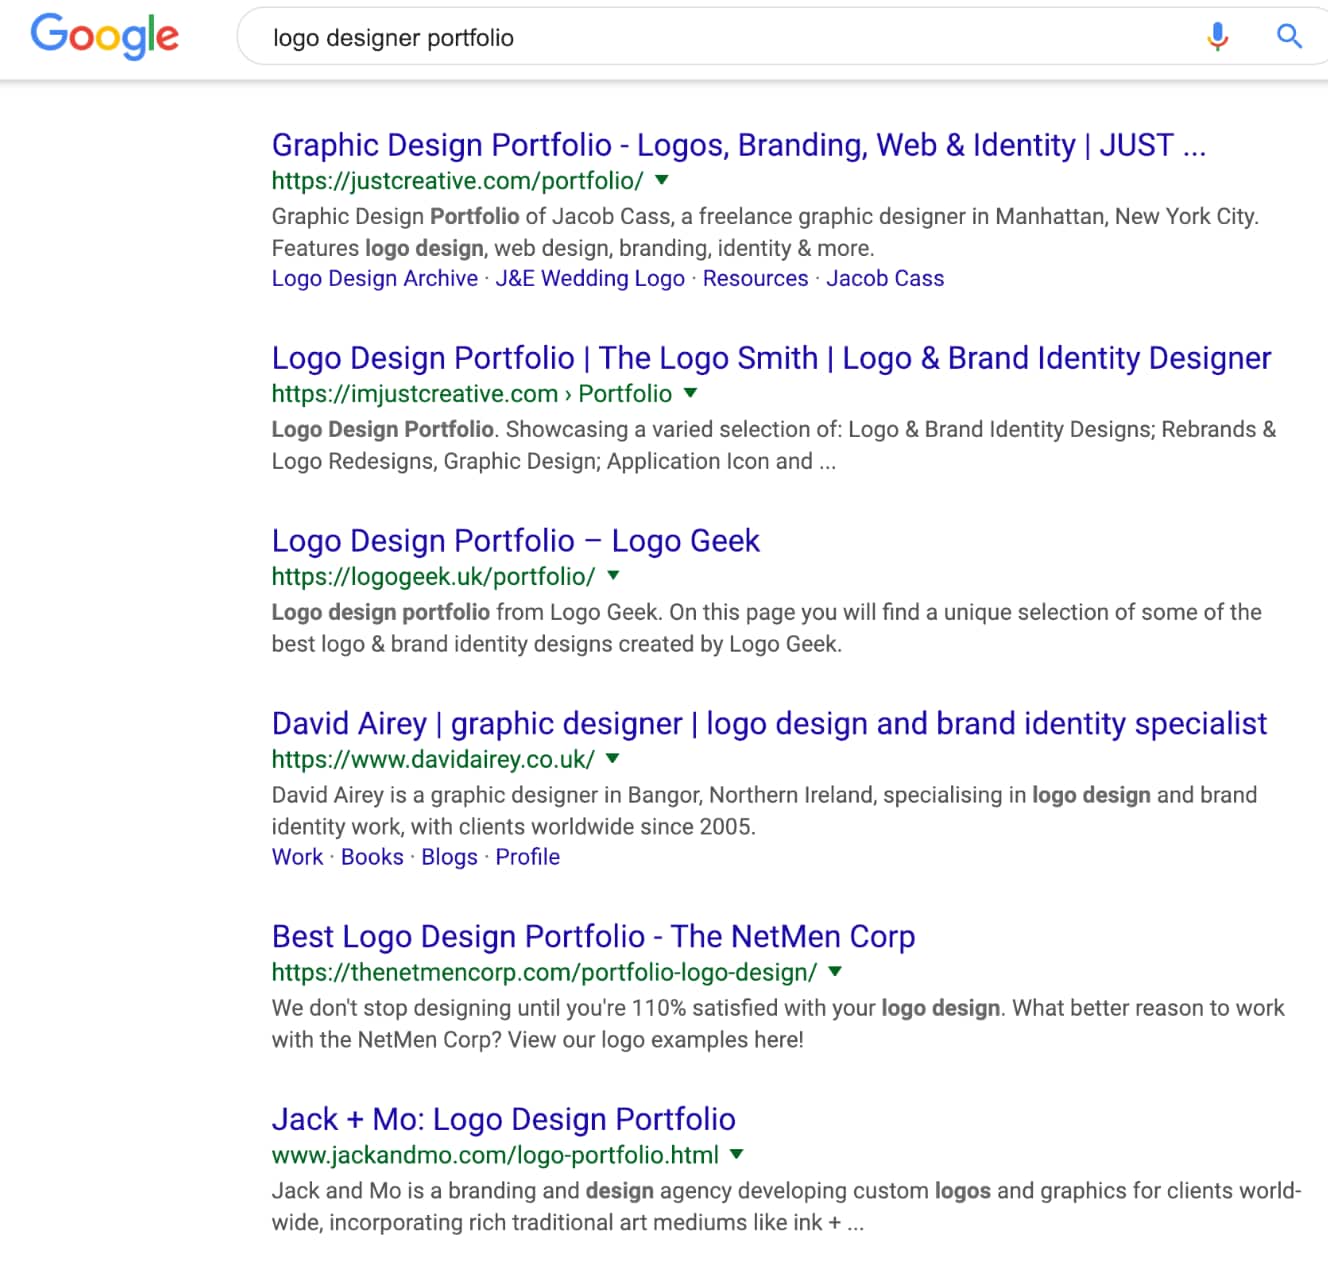 Risultati della ricerca in prima pagina di Google per le keyword "logo designer portfolio"